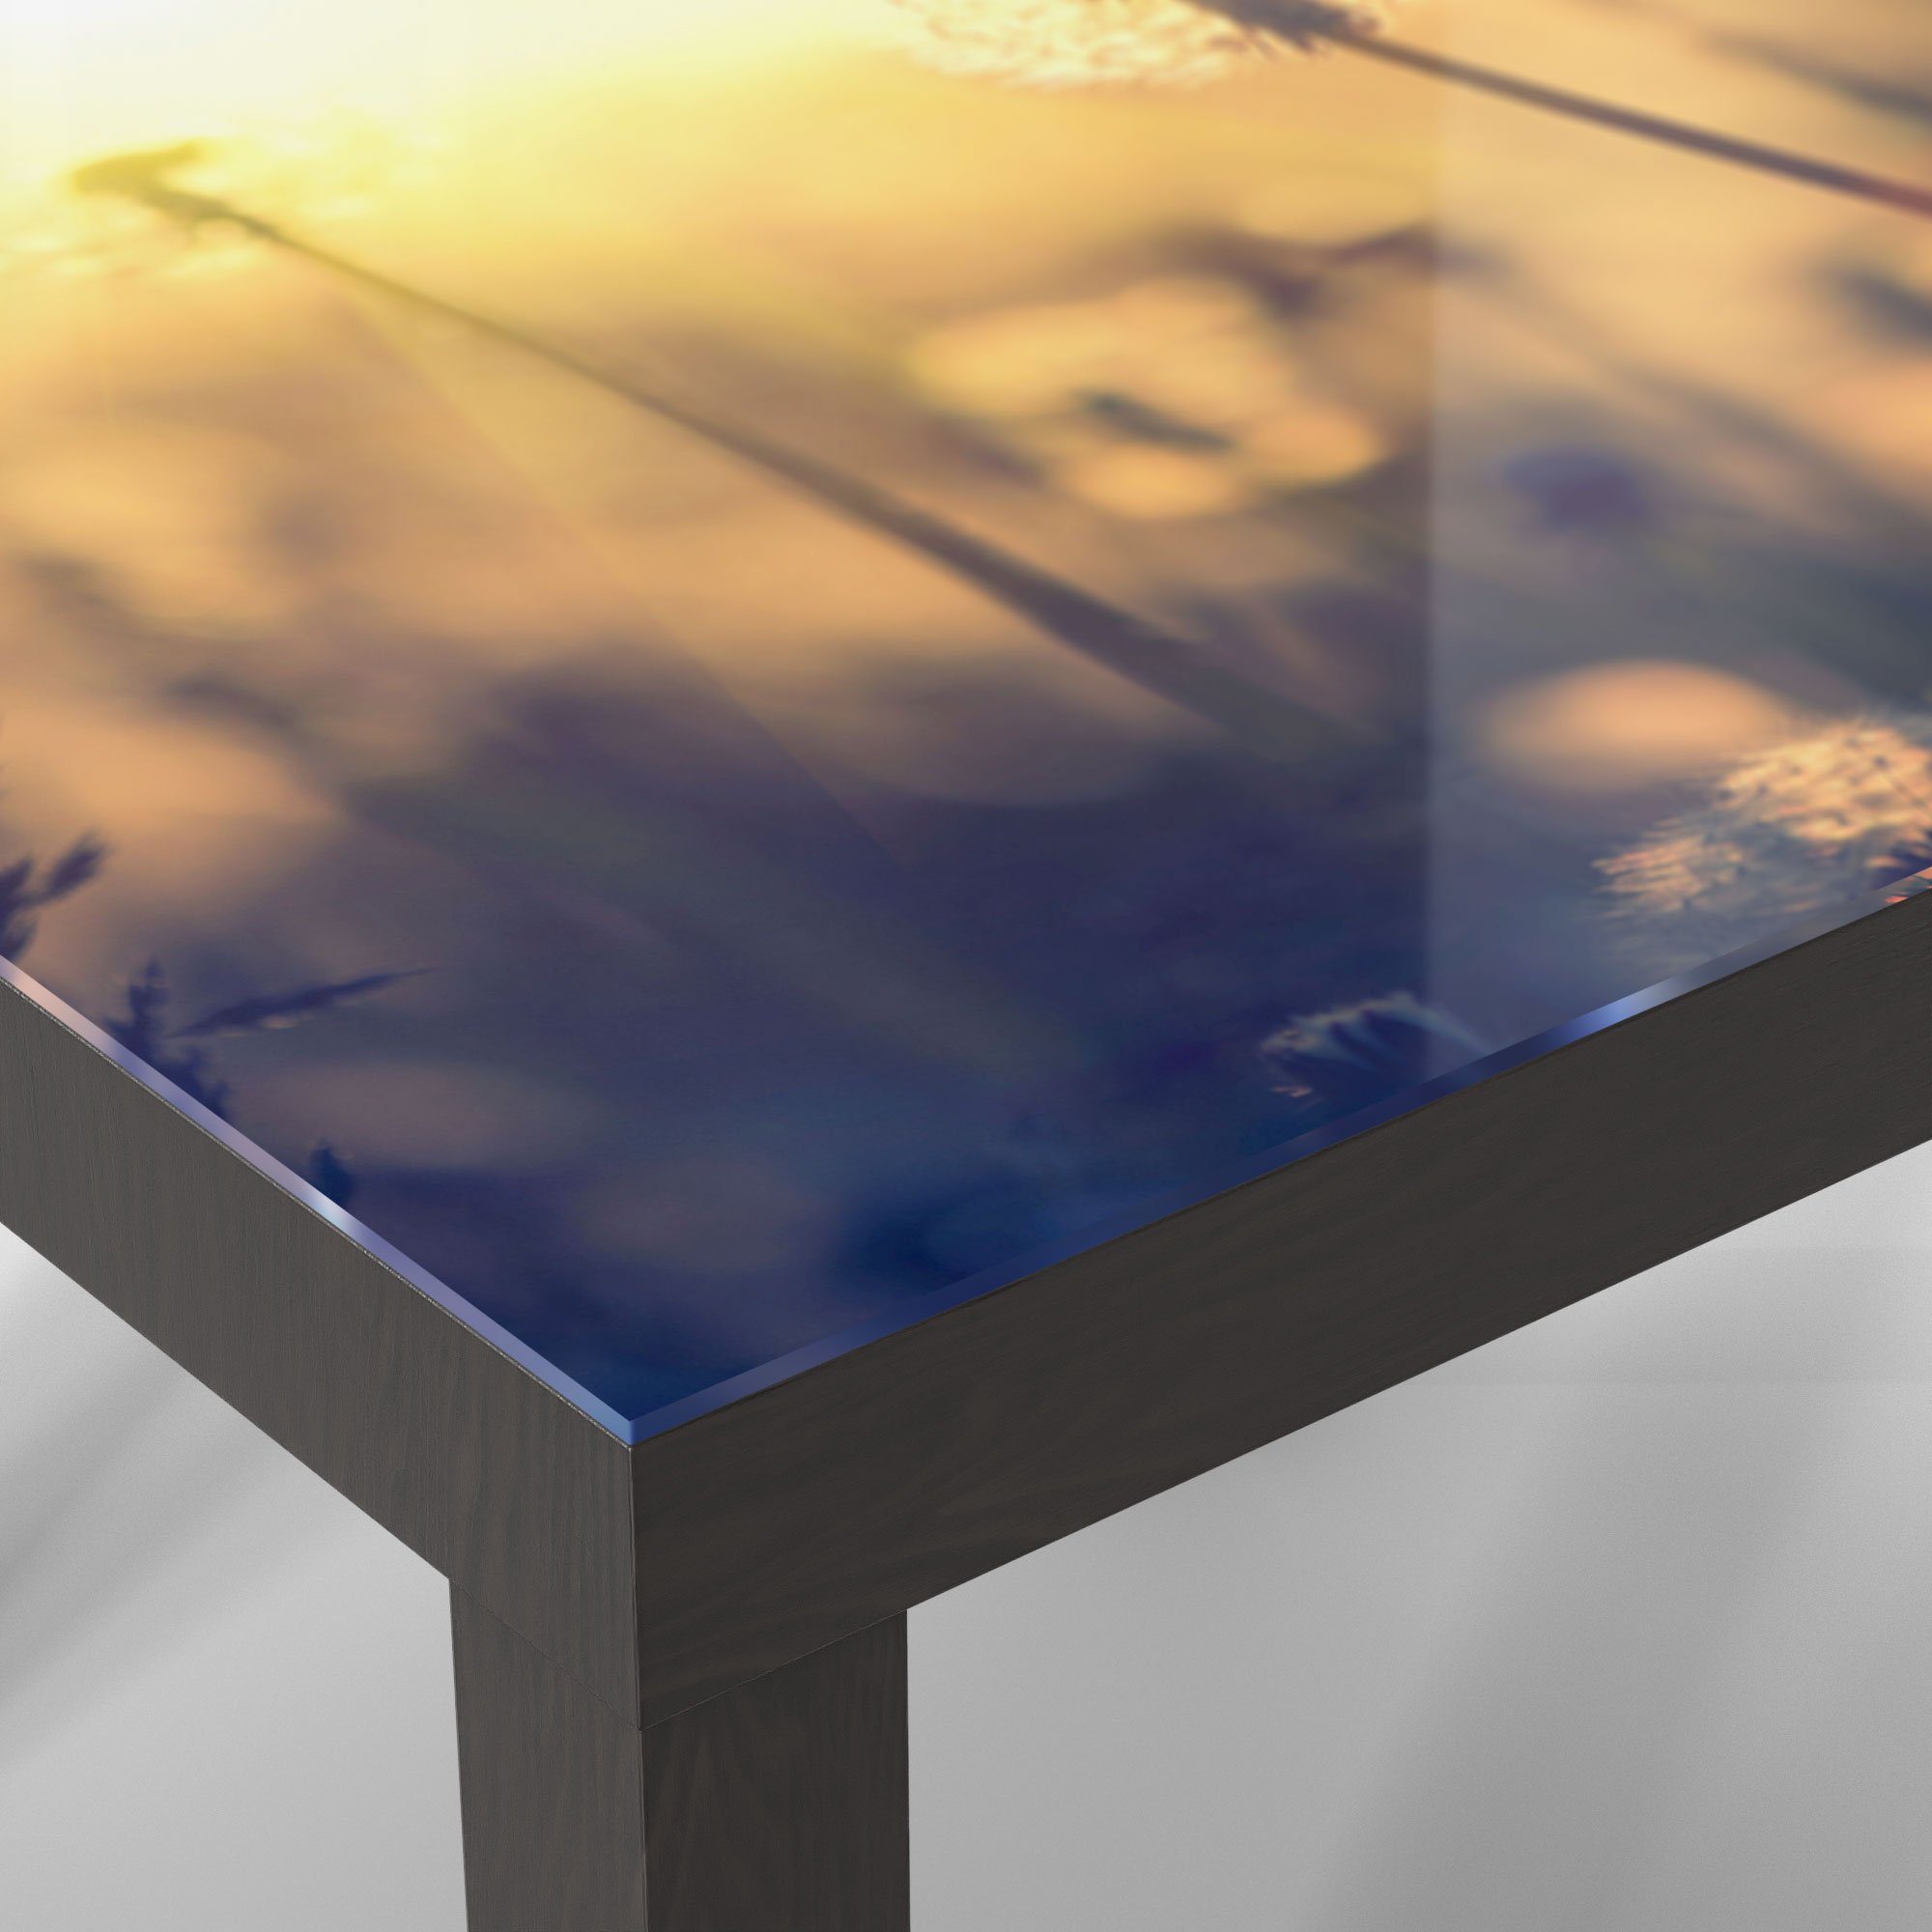 Couchtisch Glastisch Schwarz modern 'Pusteblumenwiese', DEQORI Beistelltisch Glas